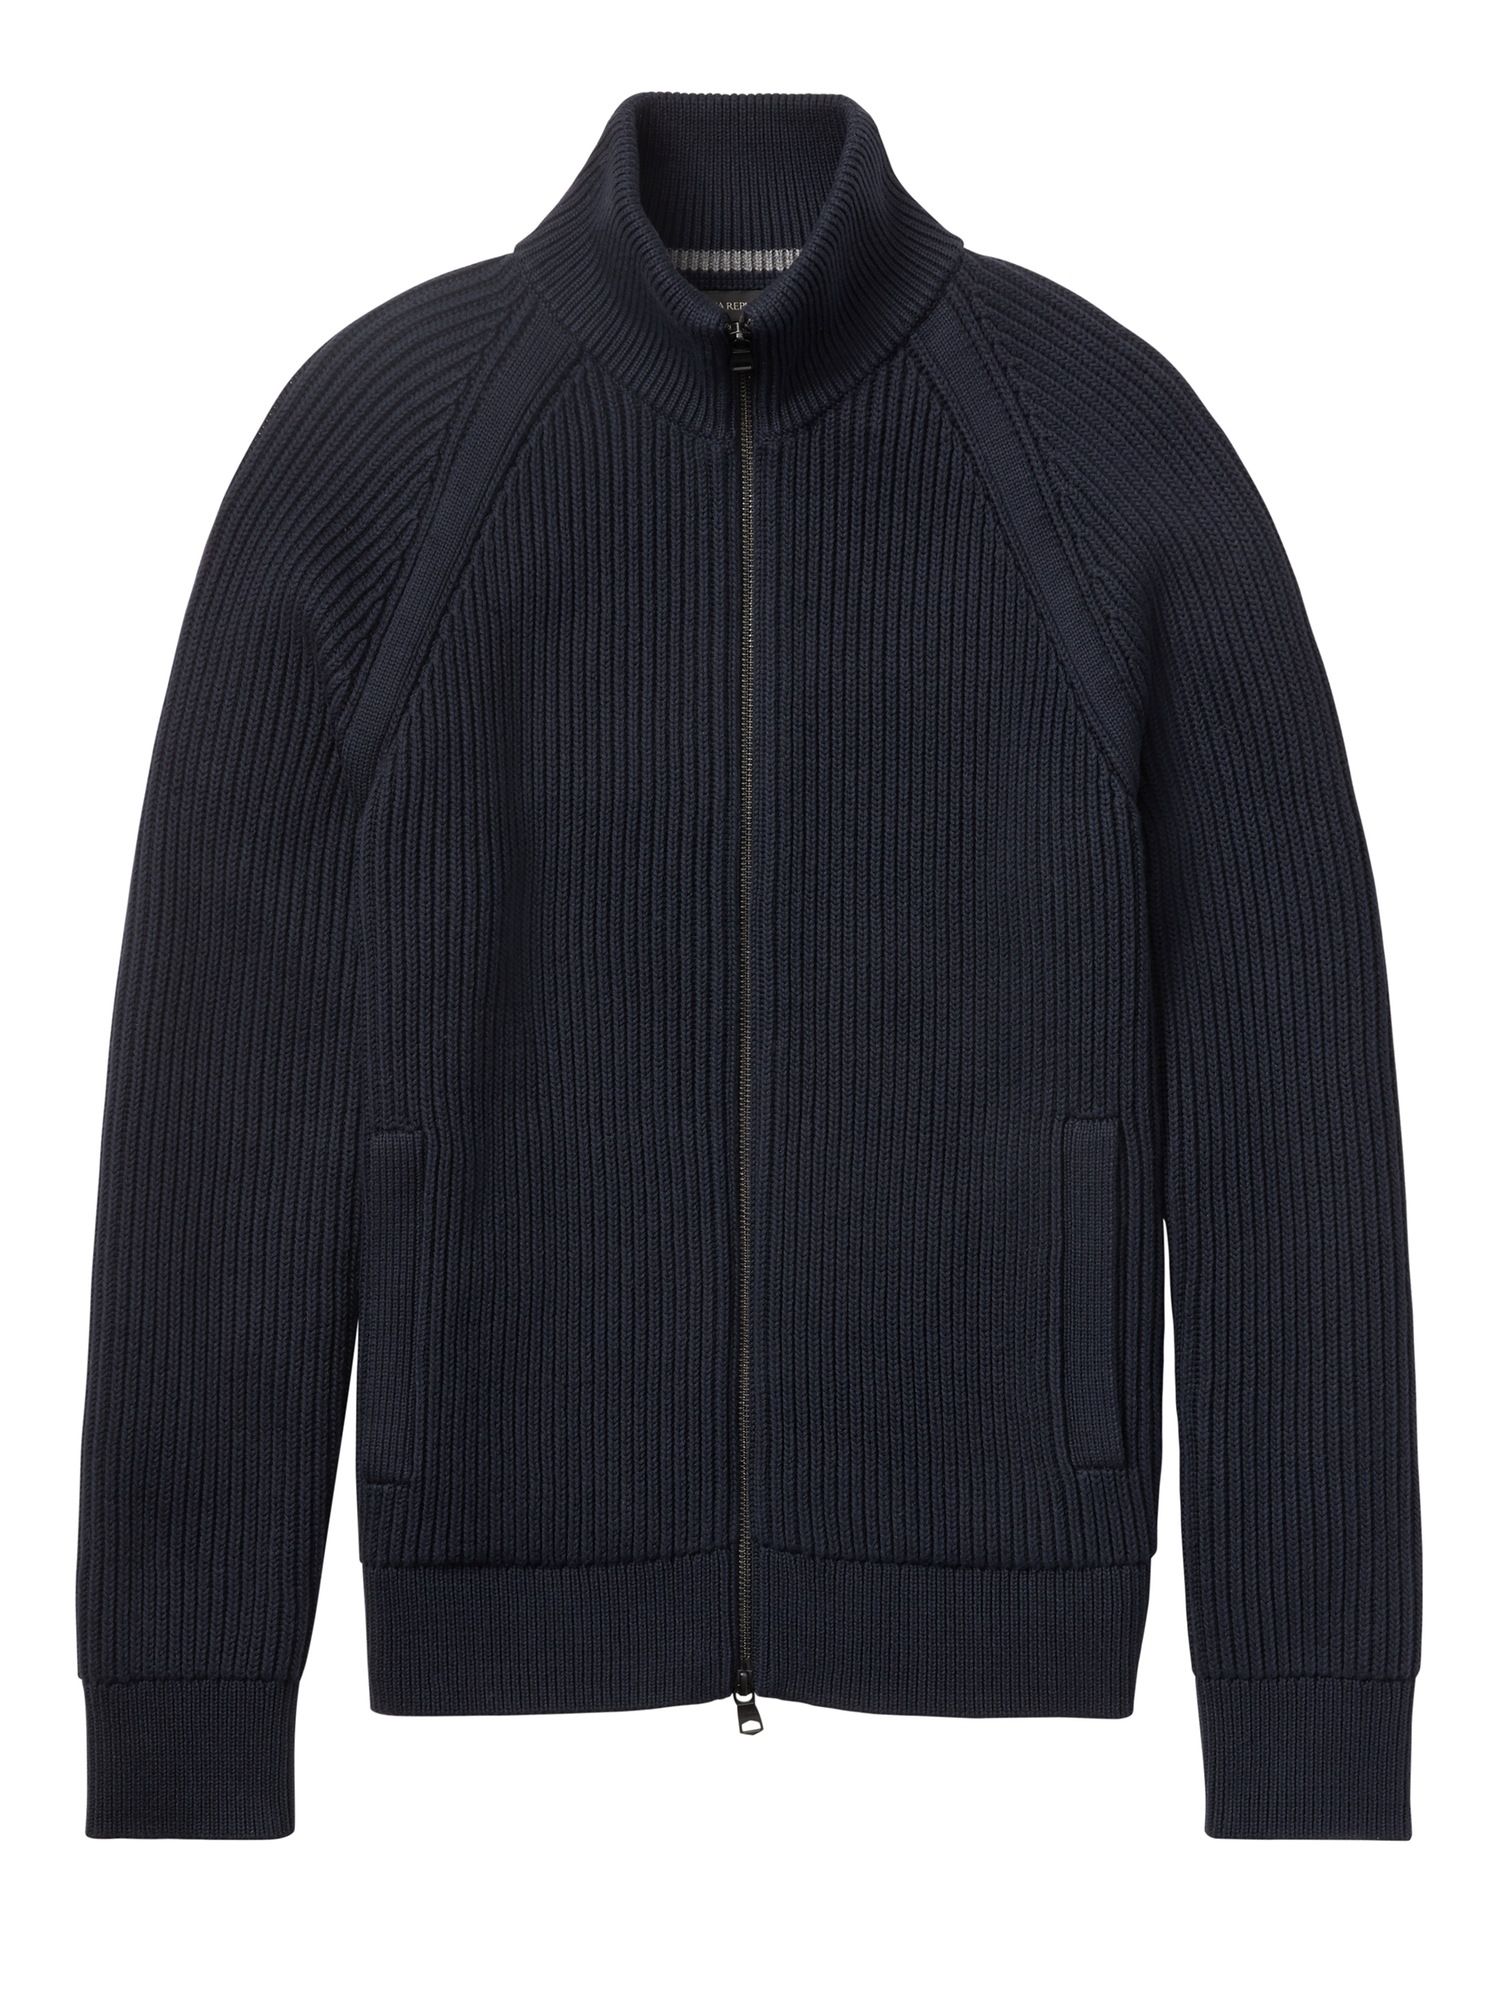 SUPIMA® Cotton Ribbed Sweater Jacket  